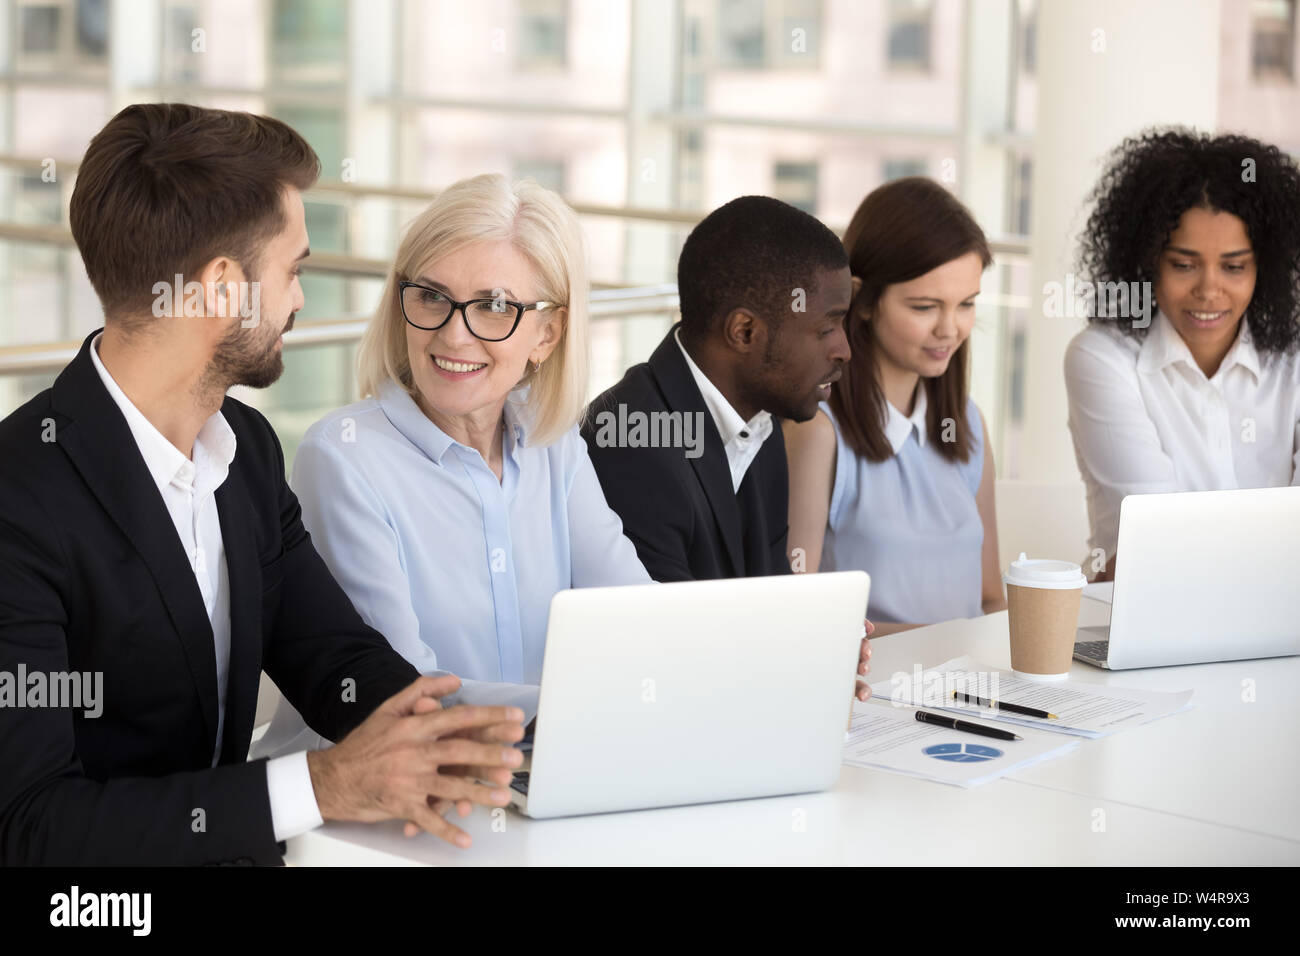 Lächelnd diverse Kollegen zusammen am Laptop arbeiten im Konferenzraum. Stockfoto